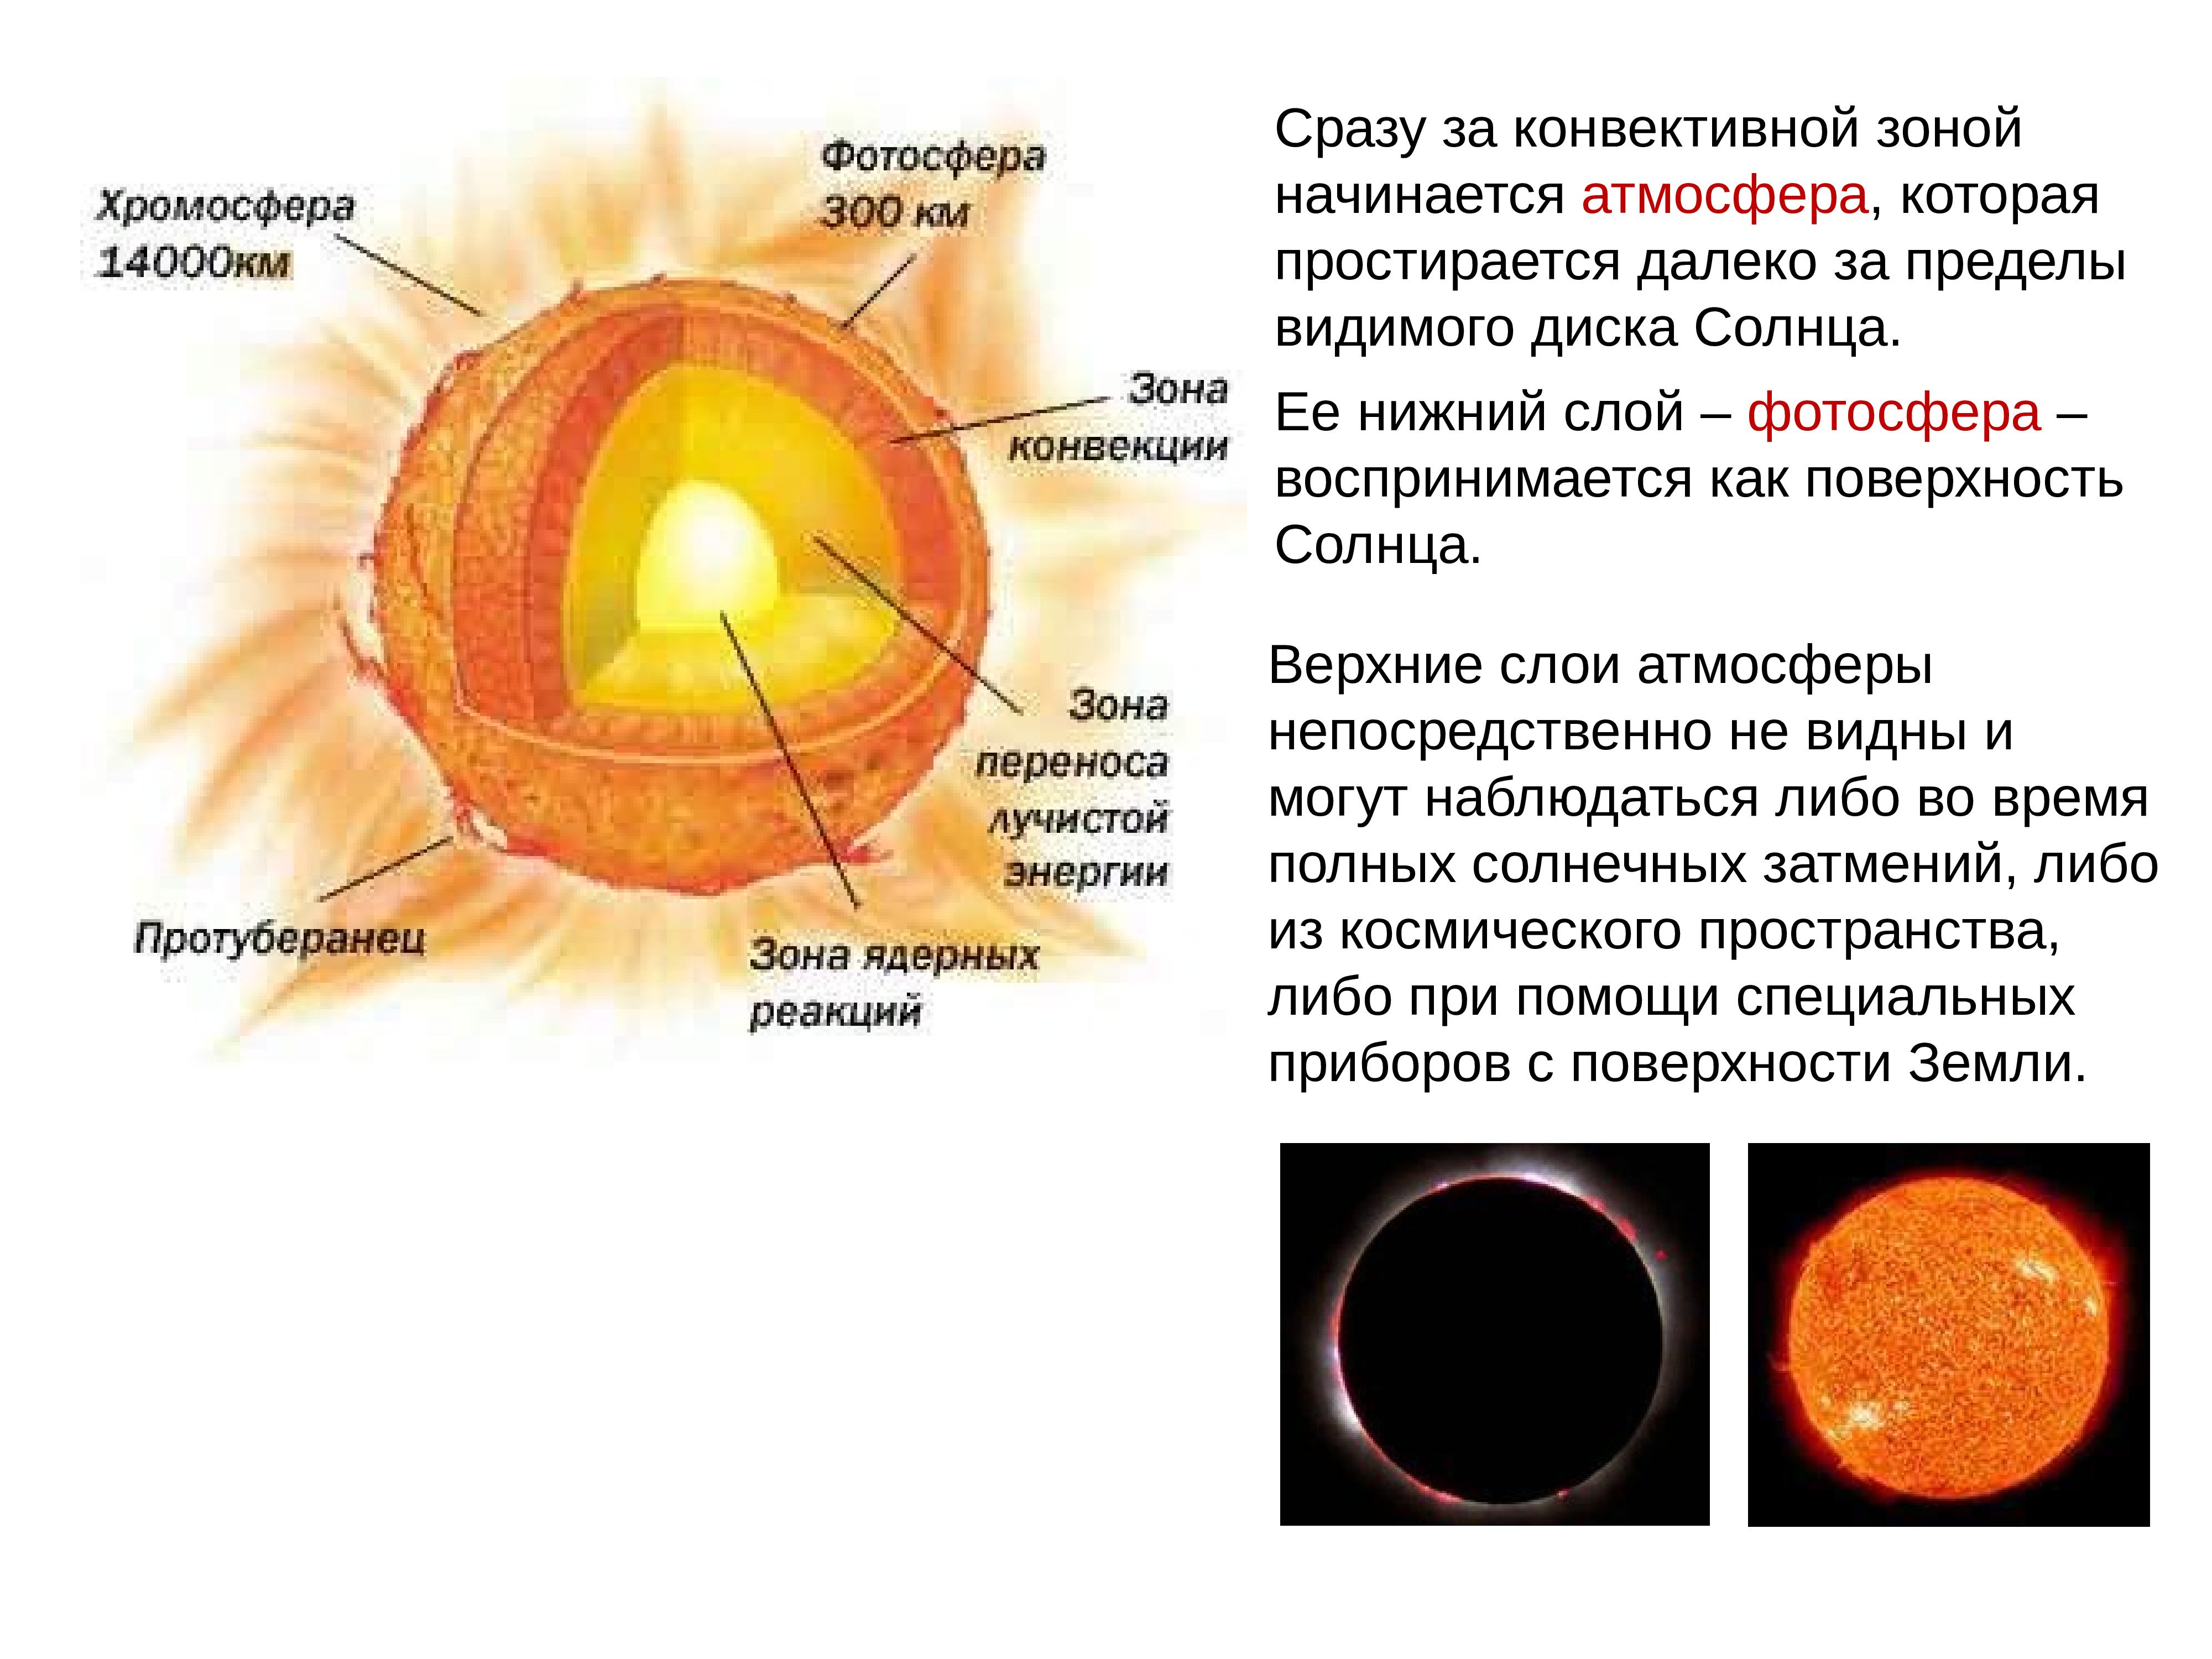 Элементы составляющие атмосферы солнца. Структура внутреннего строения солнца. Строение солнца Фотосфера. Внутреннее строение солнца схема. Солнце его строение и состав.